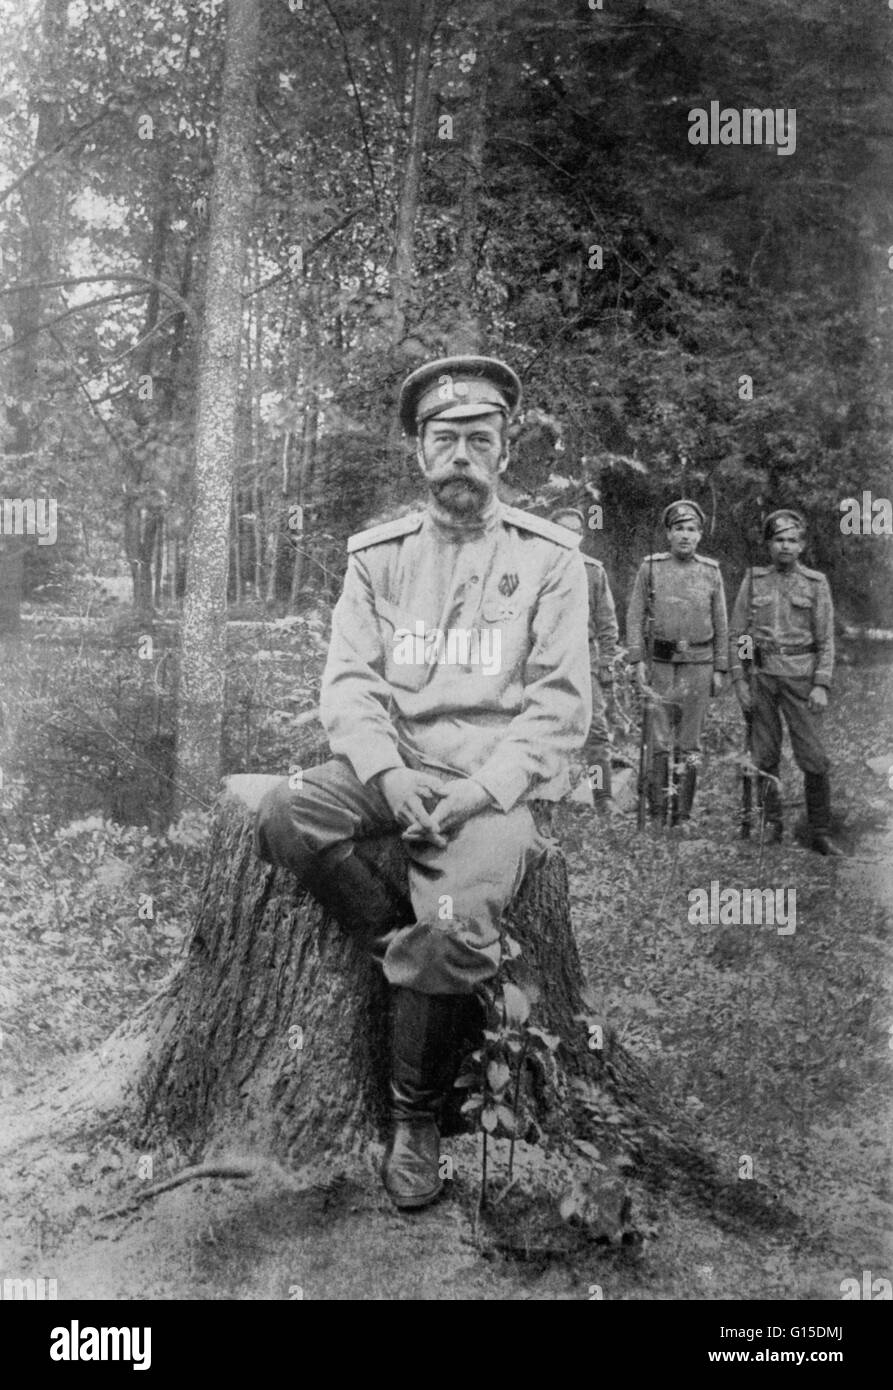 Undatierte Fotografie von Nicholas Romanov in militärischen Kleid. Nikolaus II. (18. Mai 1868 - 17. Juli 1918) war der letzte Kaiser von Russland, Großfürst von Finnland und titular König von Polen. Seinen offiziellen Kurztitel war Nicholas II, Kaiser und Autokrat aller t Stockfoto